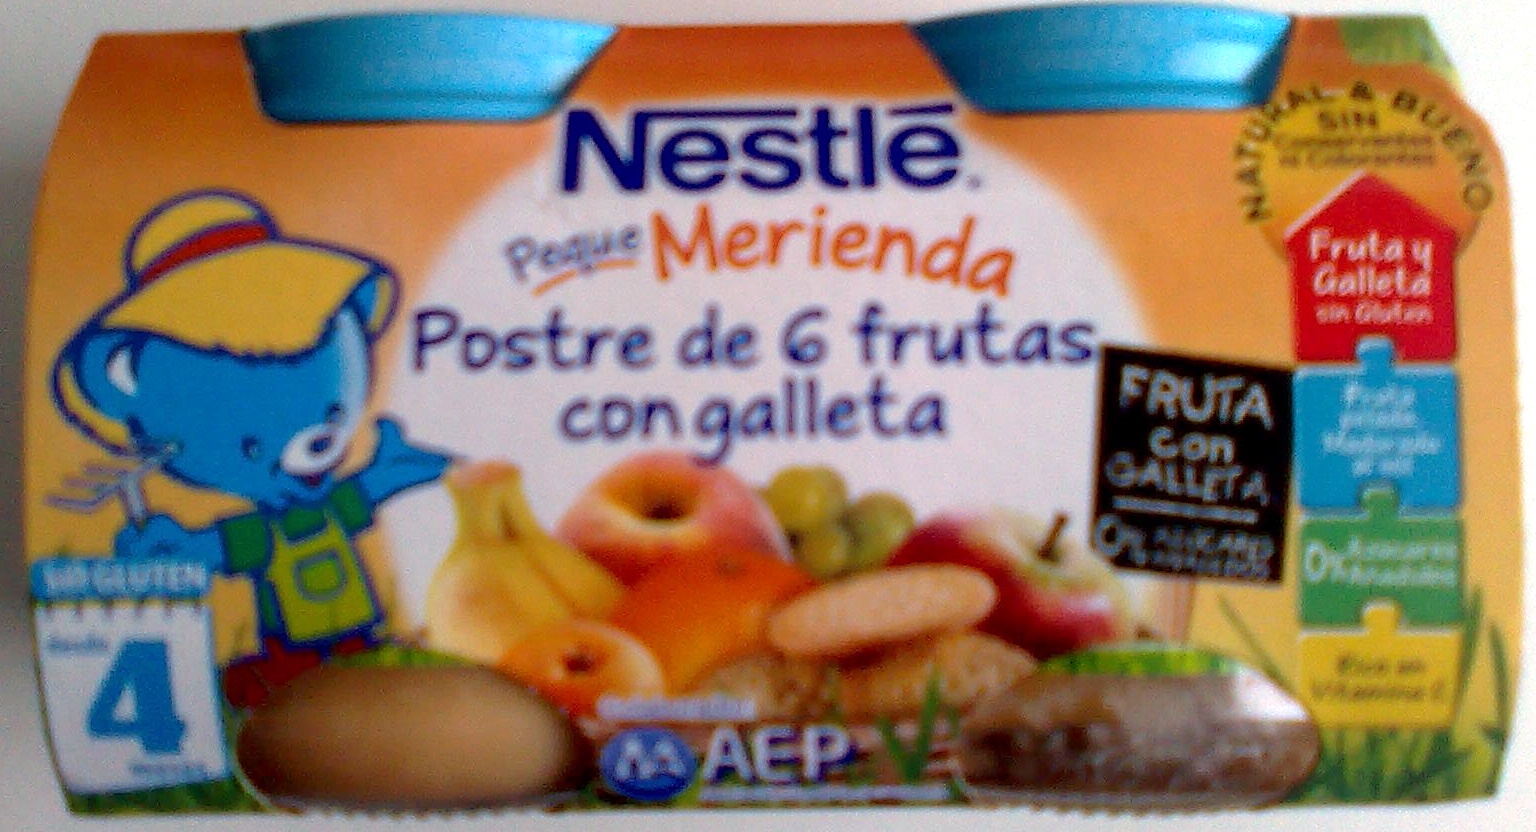 Postre de frutas "Nestlé" 6 frutas con galleta - Produkt - es